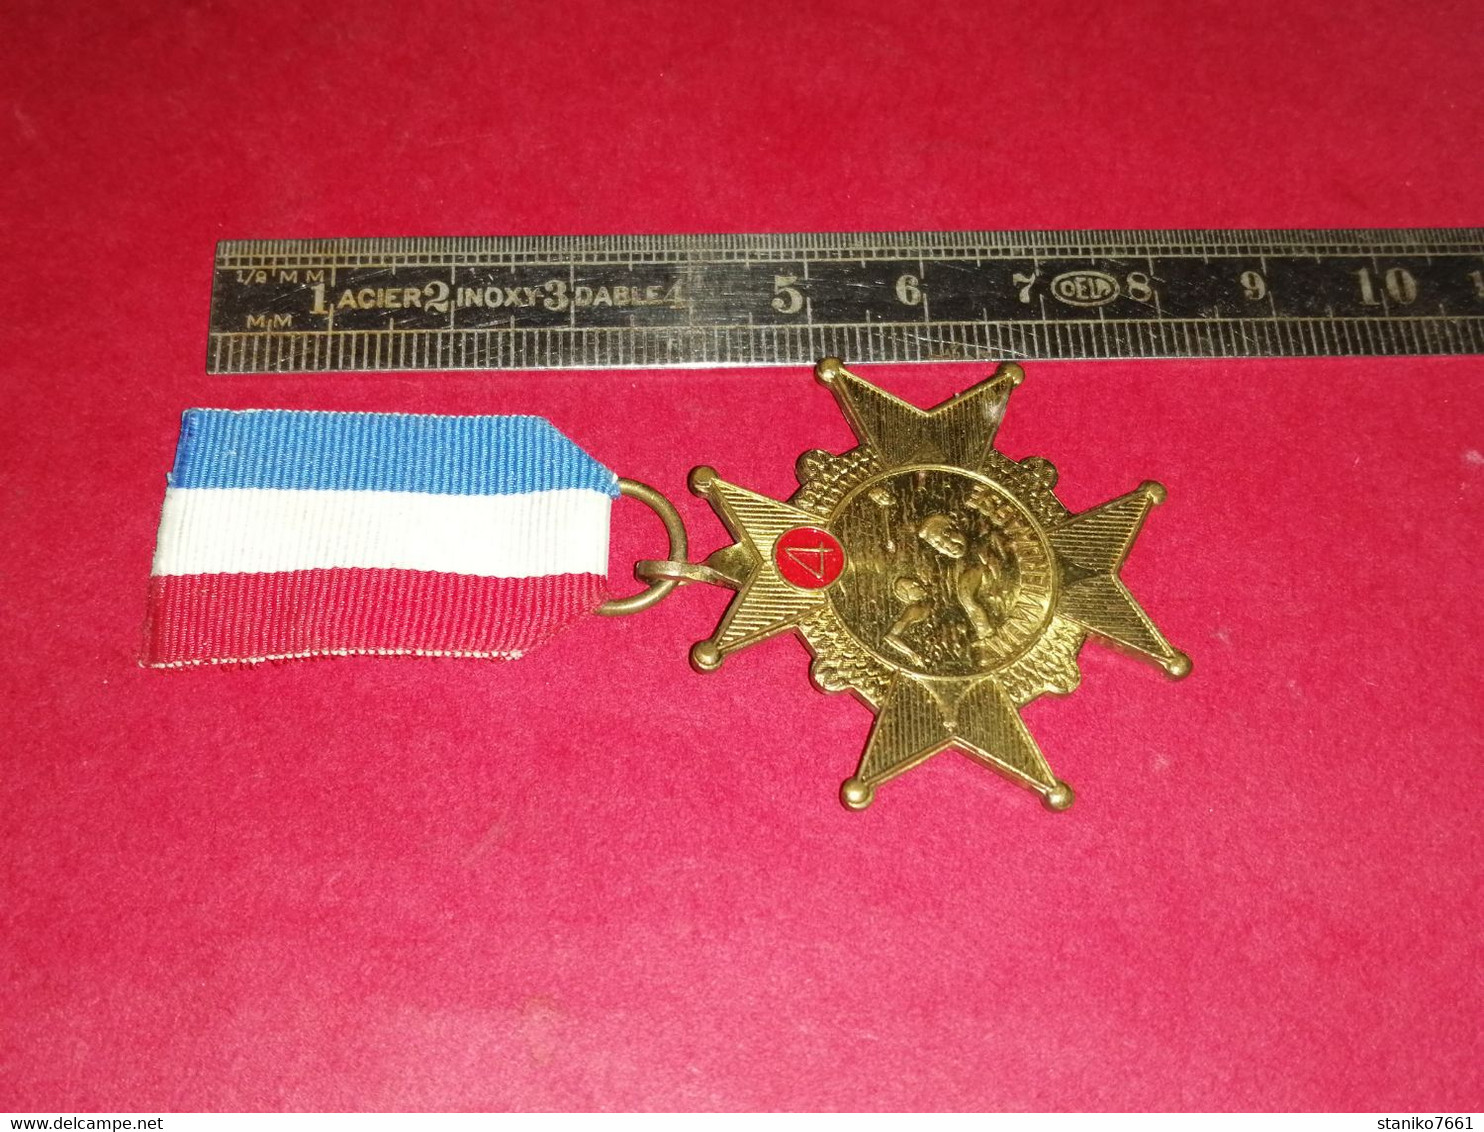 Médaille de récompense